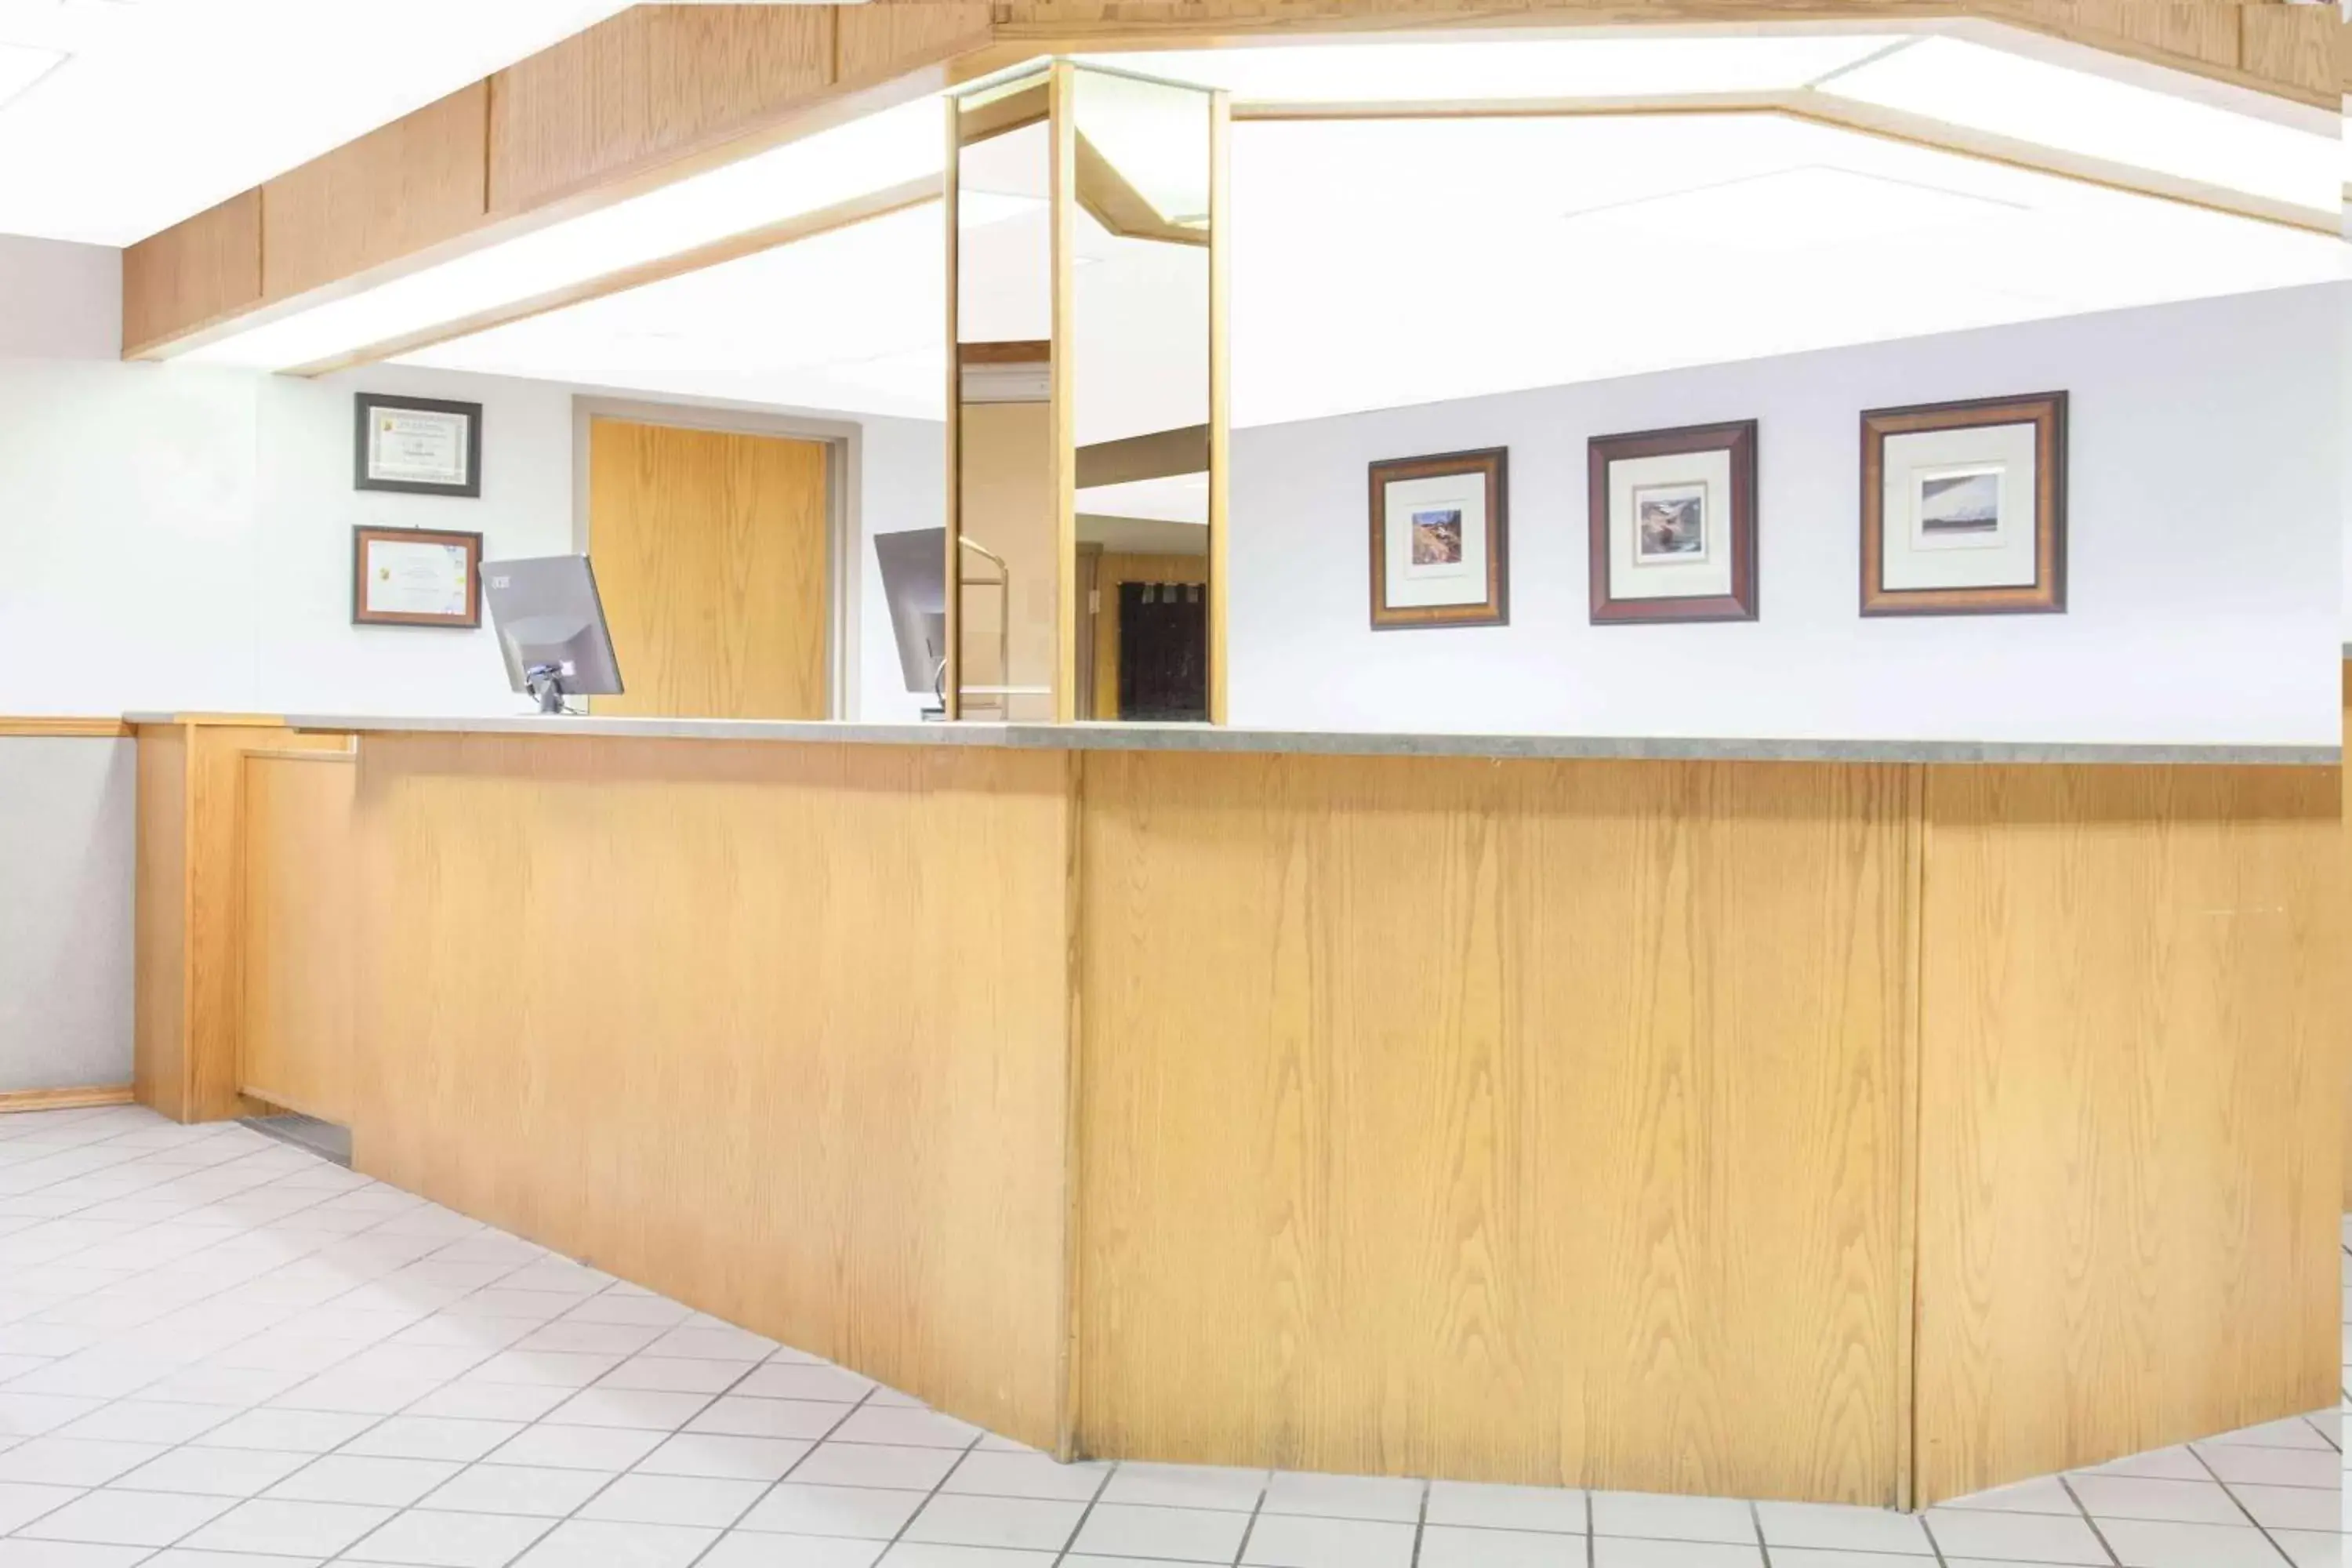 Lobby or reception, Lobby/Reception in Super 8 by Wyndham Kenora